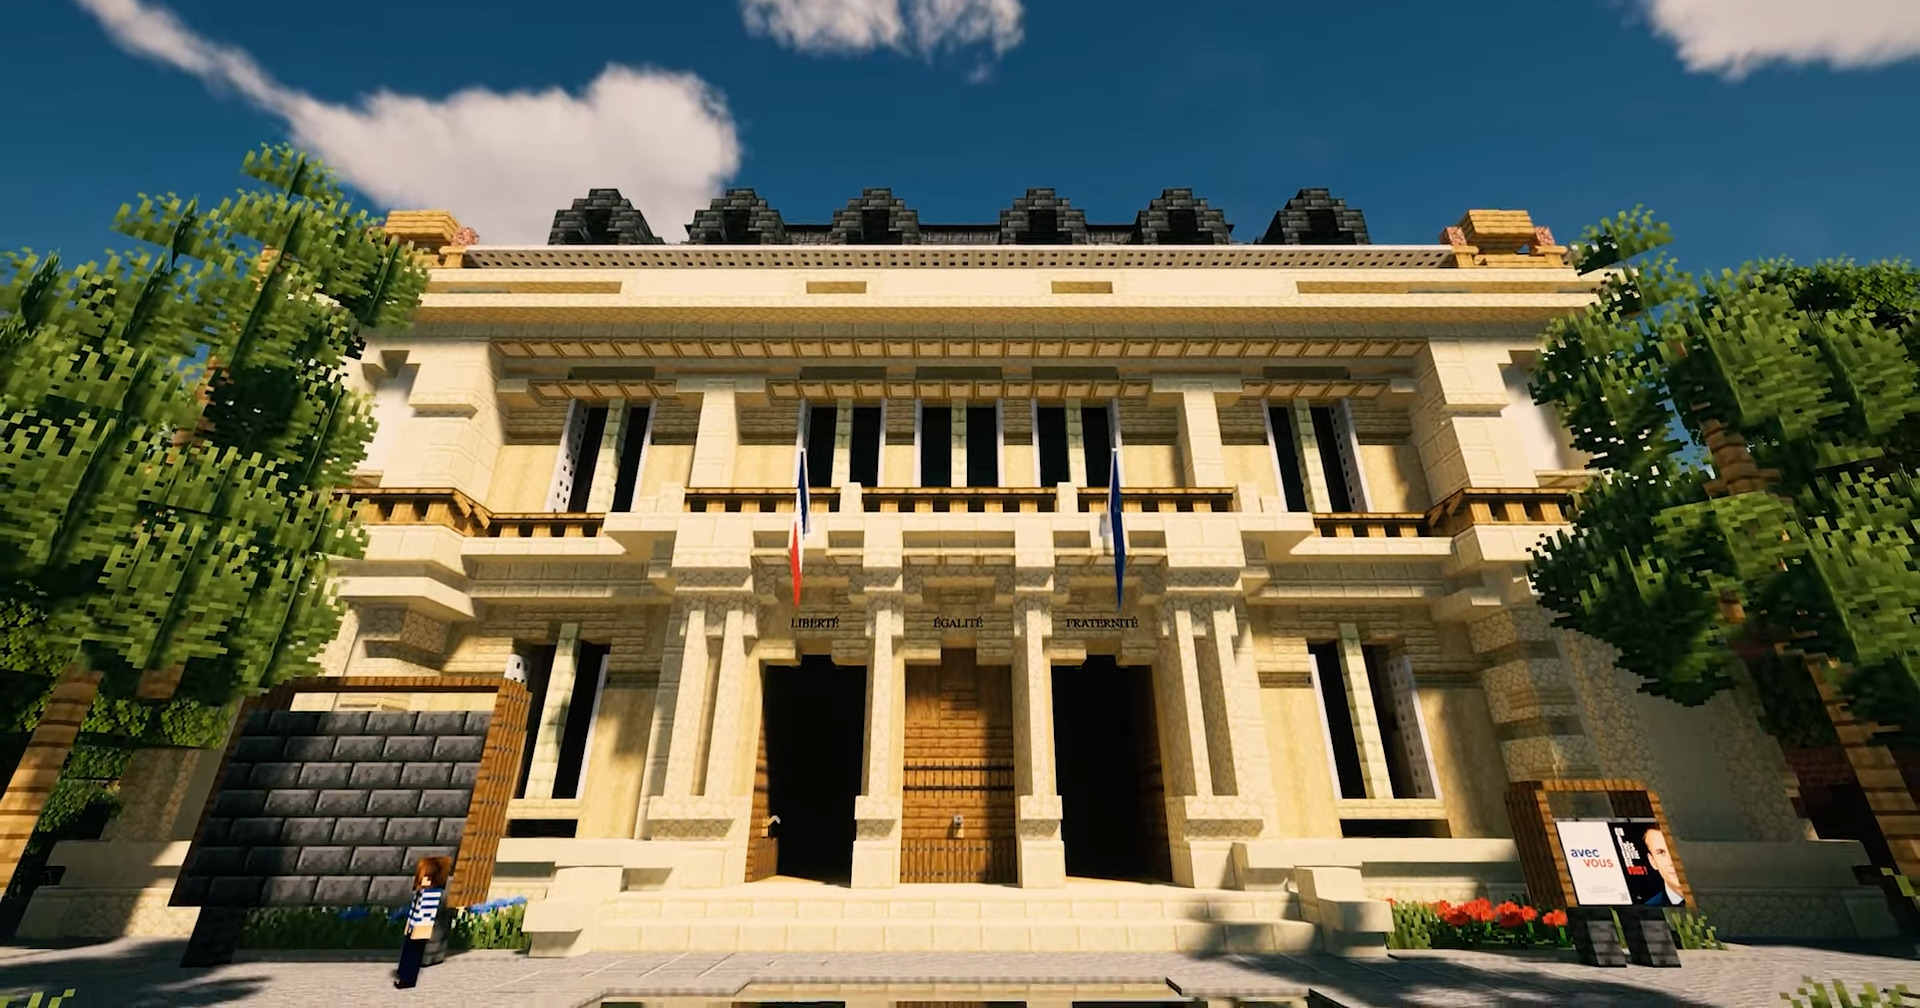 ทีมหาเสียง Emmanuel Macron ใช้ Minecraft ในหาเสียงรับเลือกตั้ง ปธน. สมัยหน้า